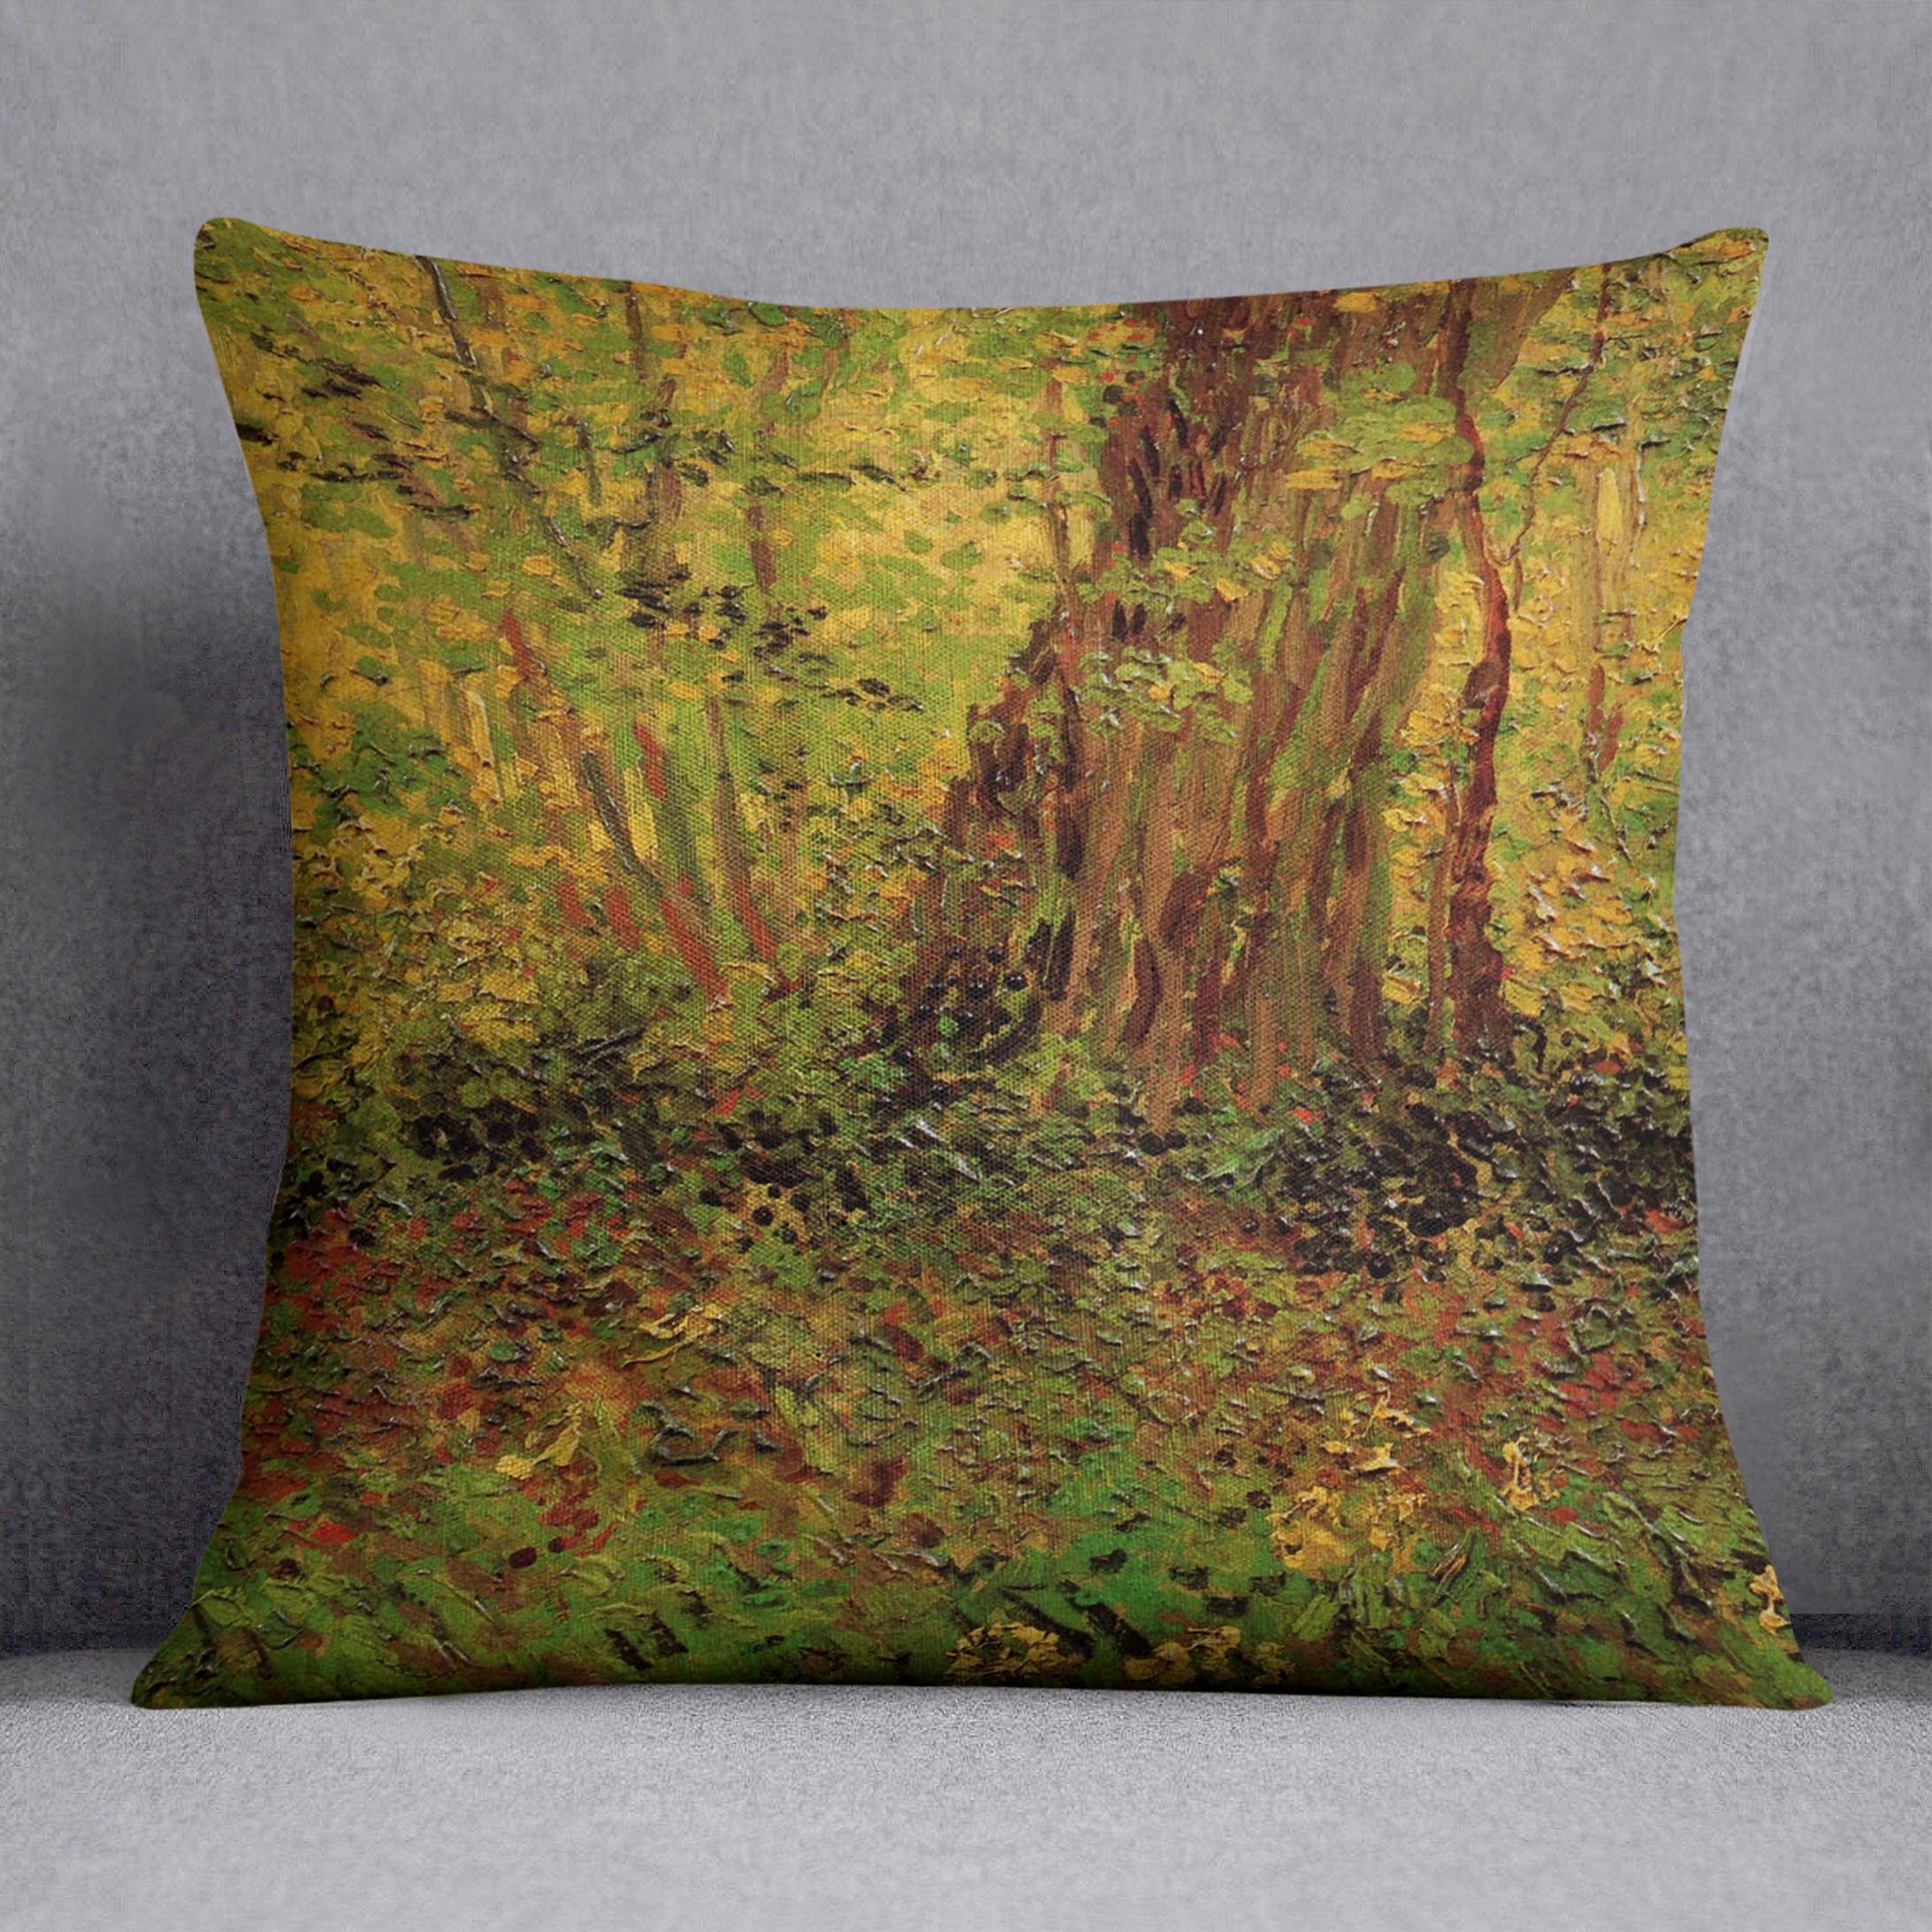 Undergrowth 2 by Van Gogh Cushion